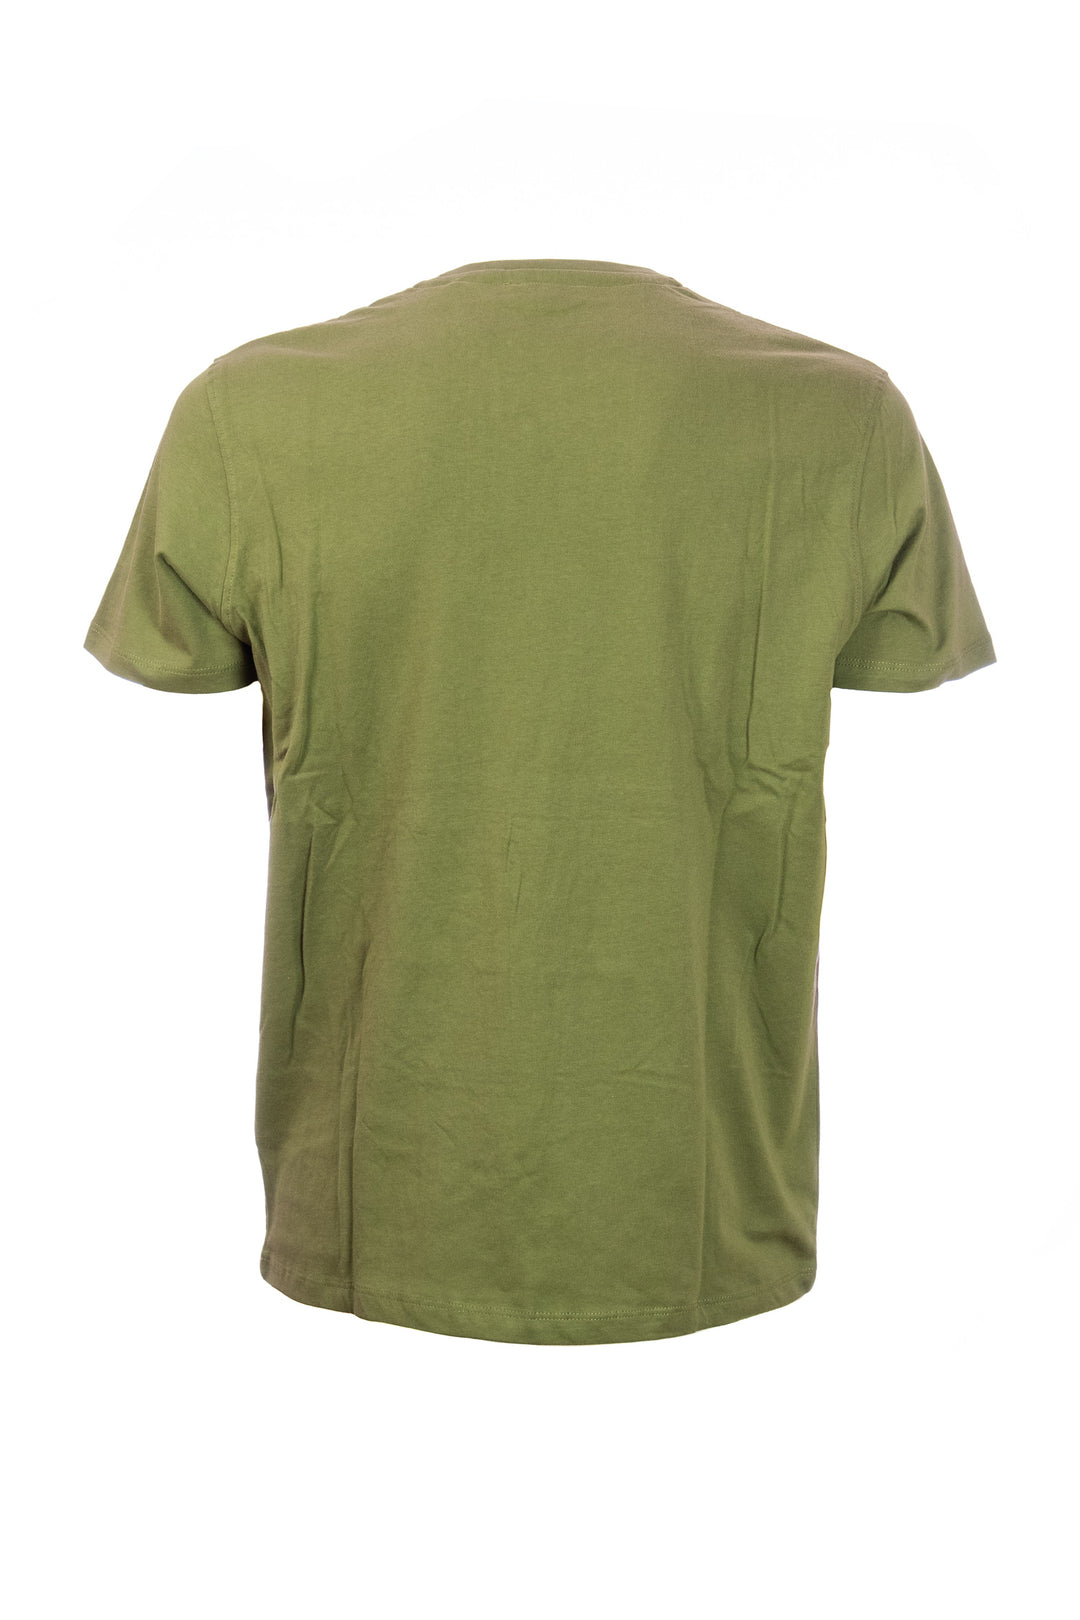 U.S. POLO ASSN. T-shirt verde oliva in cotone con logo ricamato sul petto - Mancinelli 1954